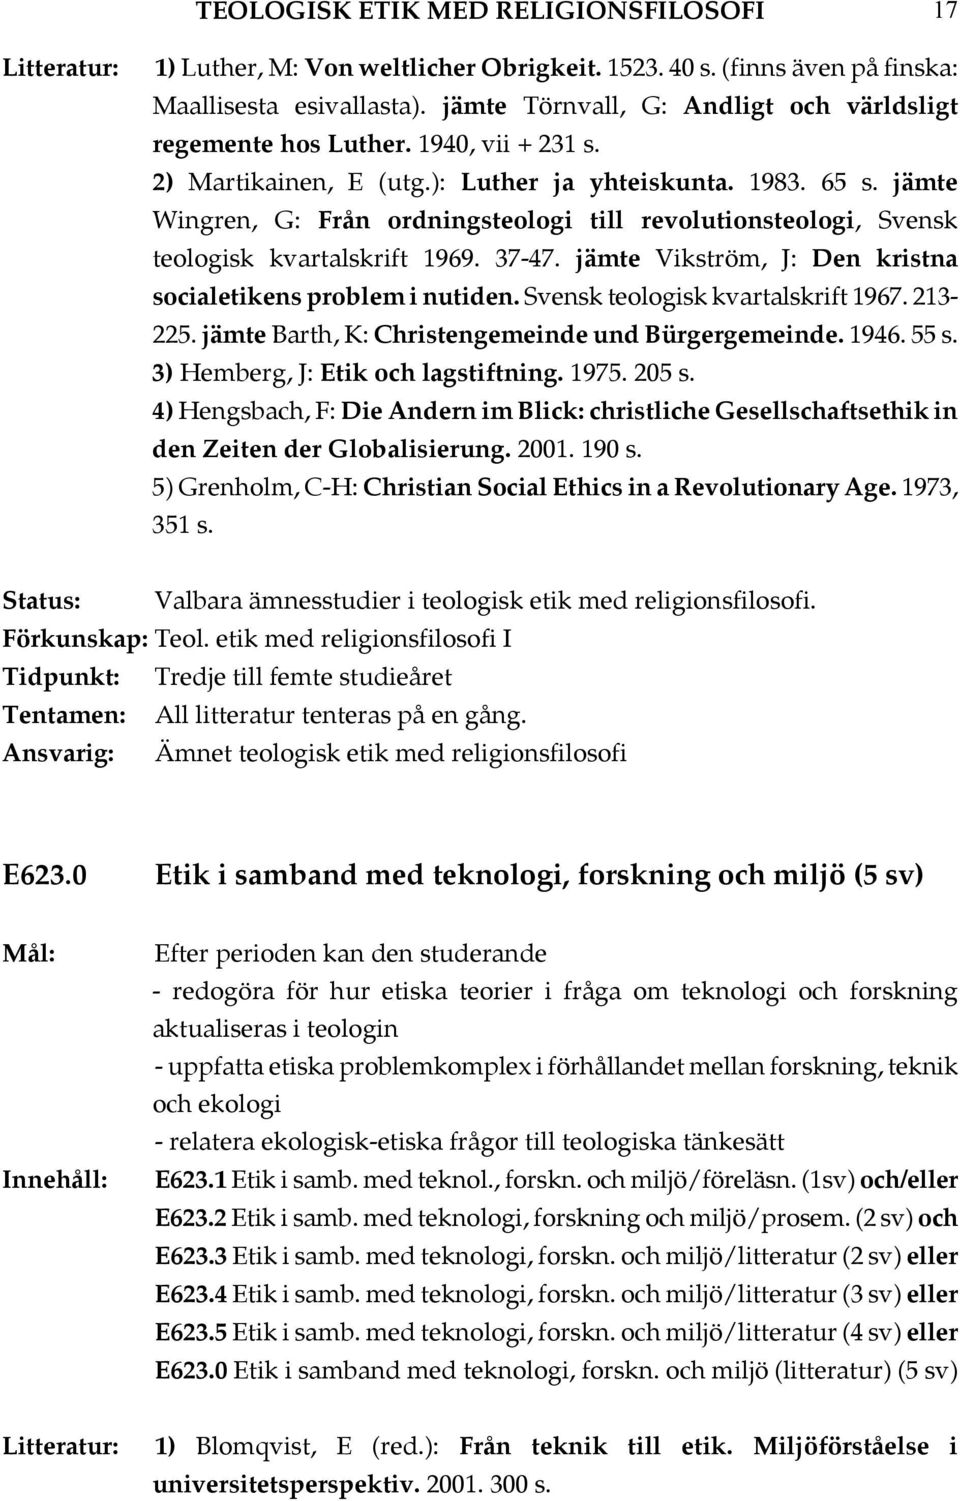 jämte Wingren, G: Från ordningsteologi till revolutionsteologi, Svensk teologisk kvartalskrift 1969. 37-47. jämte Vikström, J: Den kristna socialetikens problem i nutiden.